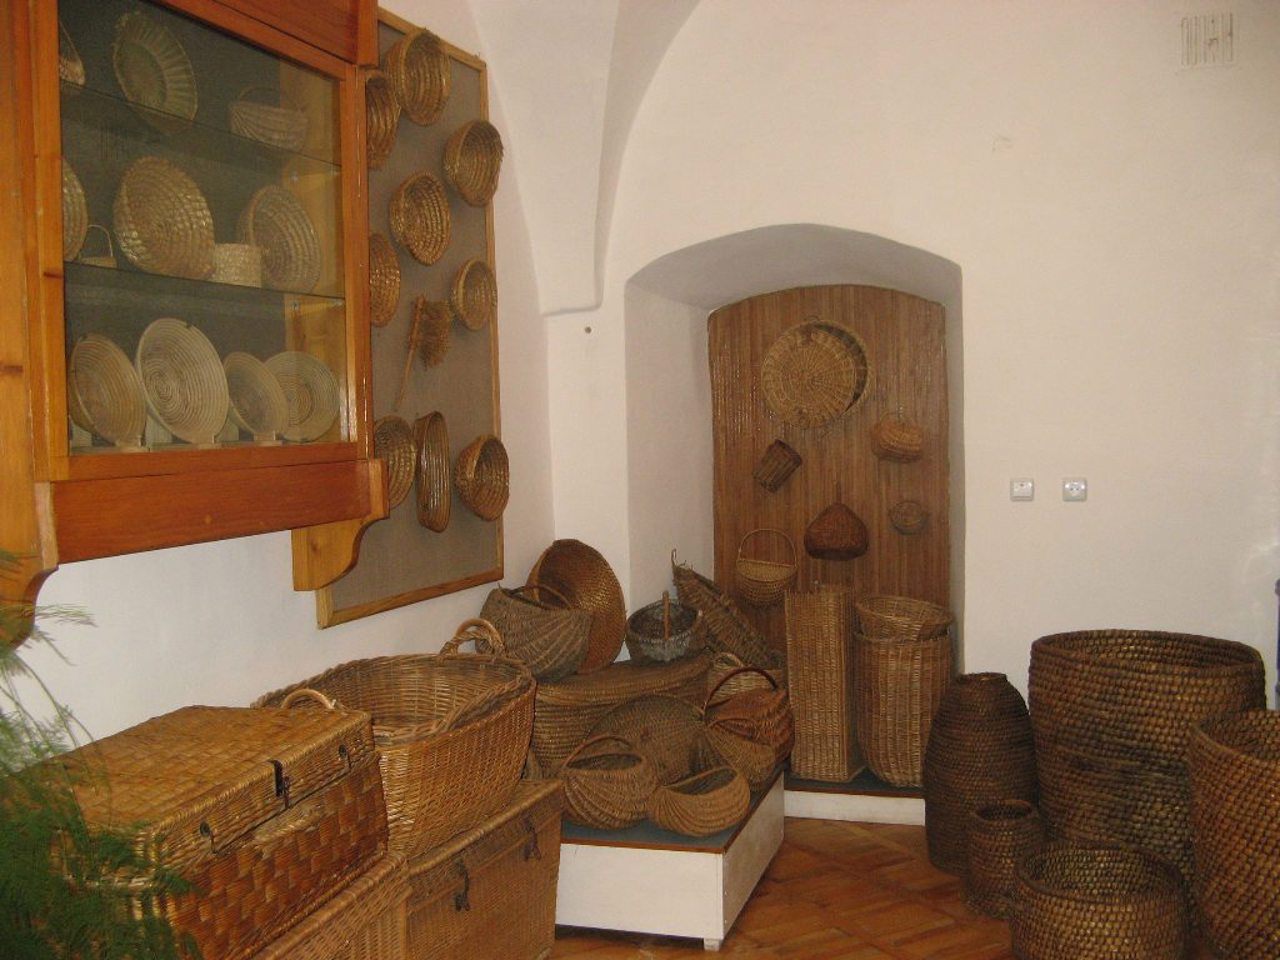 Boykivshchyna Museum, Sambir